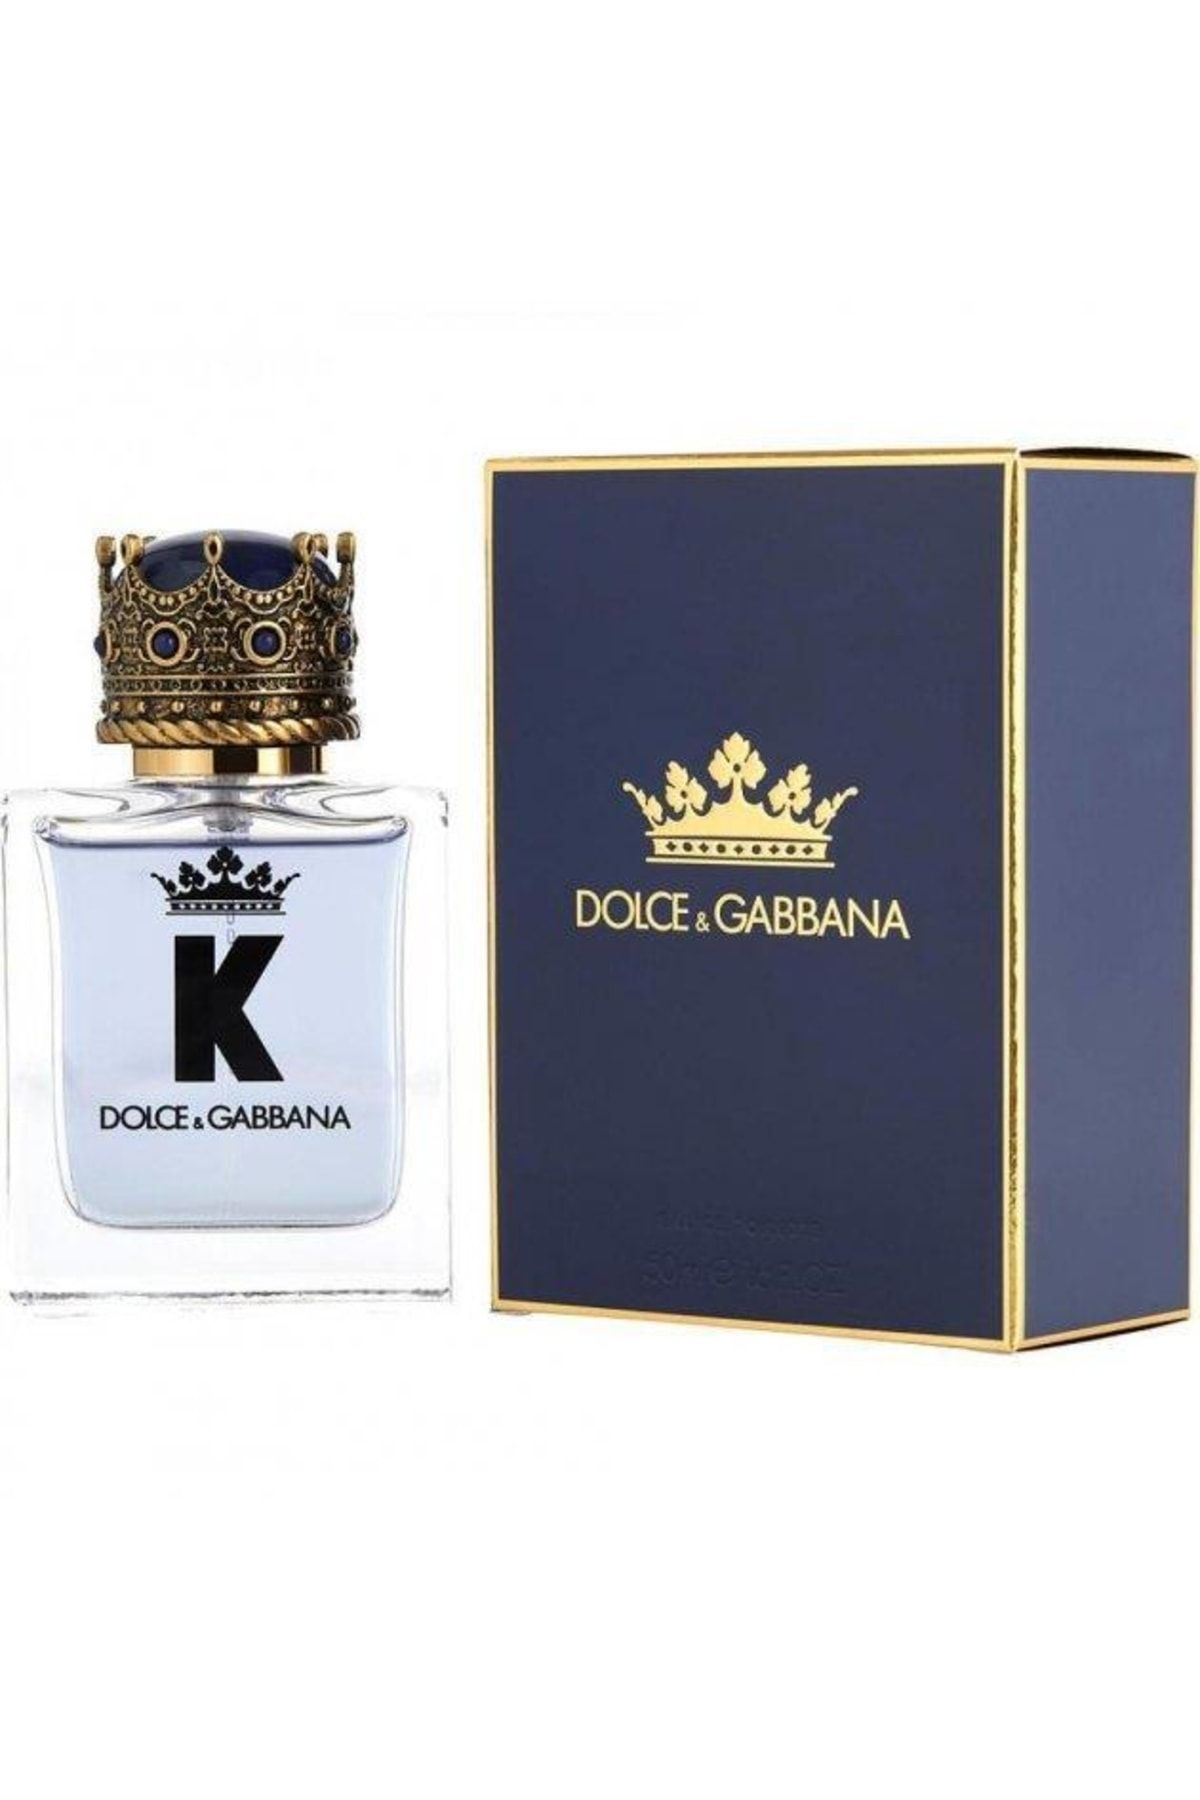 K by dolce gabbana. Dolce & Gabbana k for men 100 мл. Dolce Gabbana King 100ml. Dolce and Gabbana King 50 ml. Dolce&Gabbana King туалетная вода 50 мл.